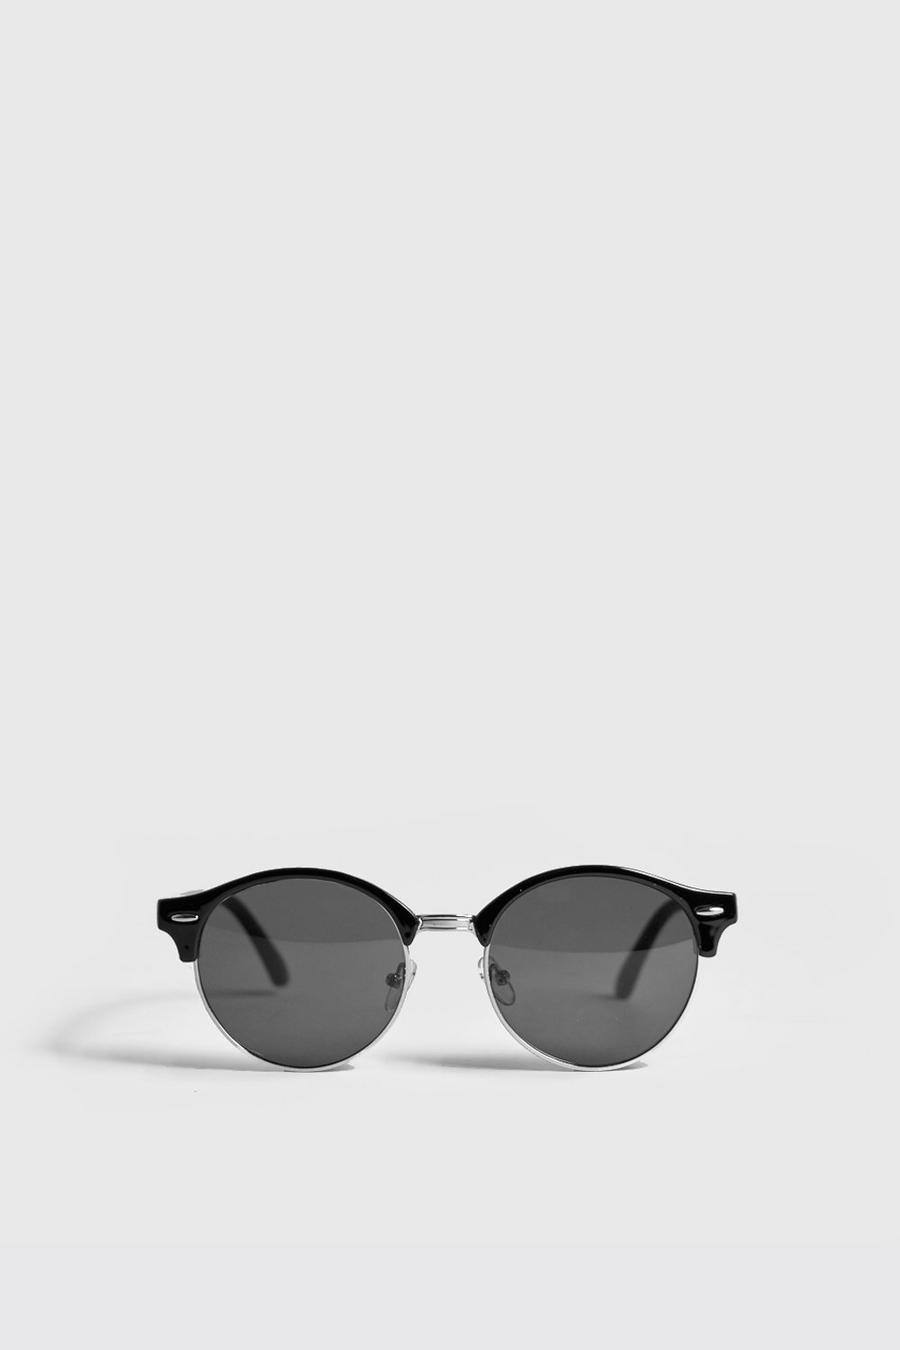 Schwarze Sonnenbrille mit runden Gläsern und goldenen Details